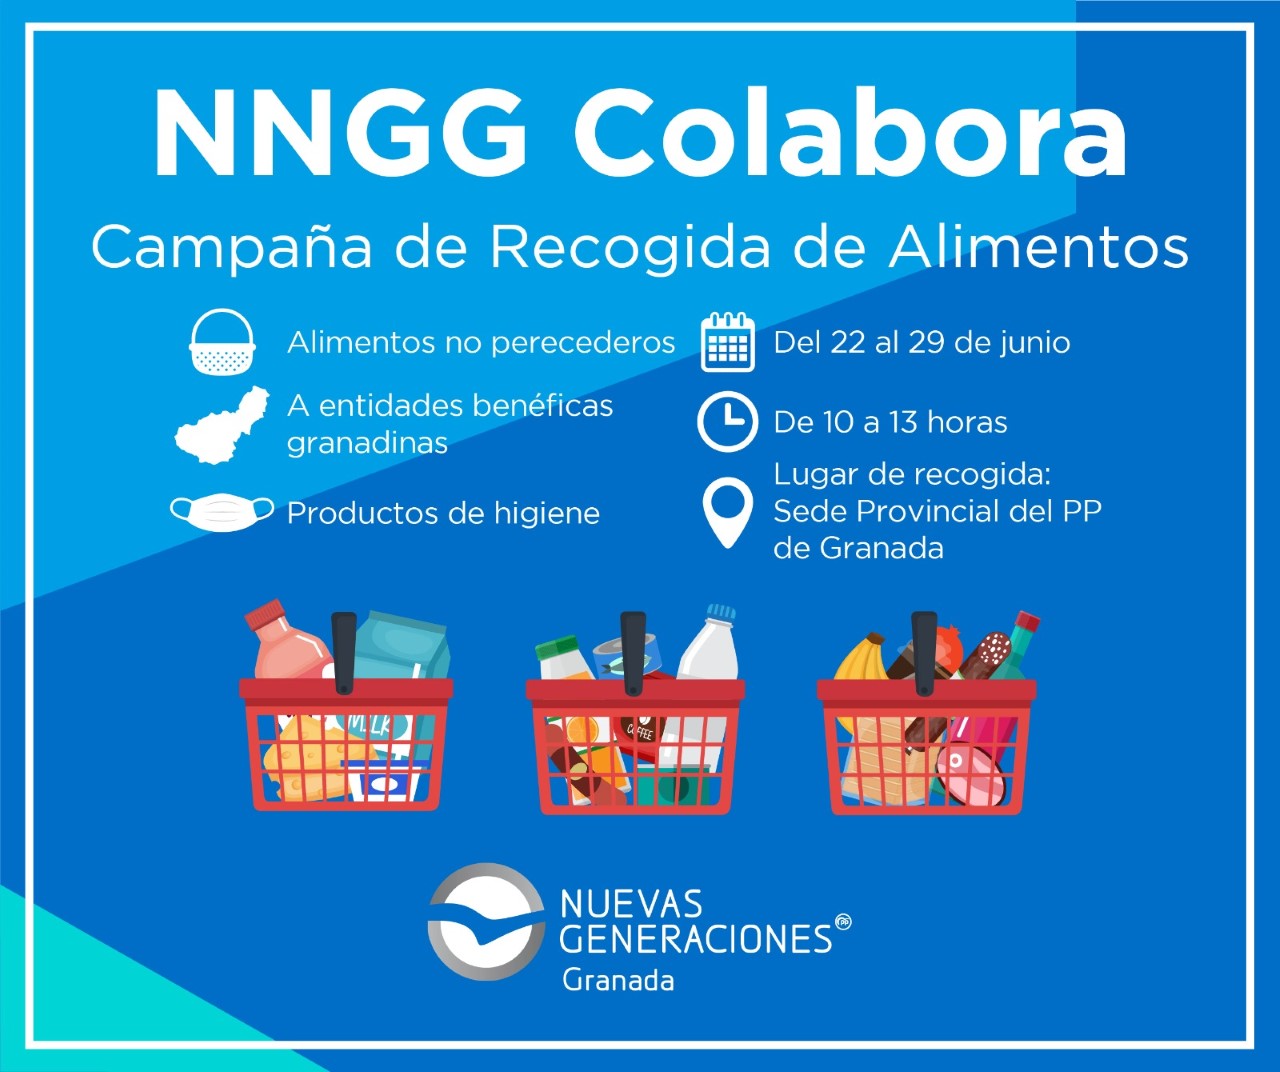 NNGG Granada se suma a la campaña de recogida de alimentos para familias necesitadas a causa de la Covid19